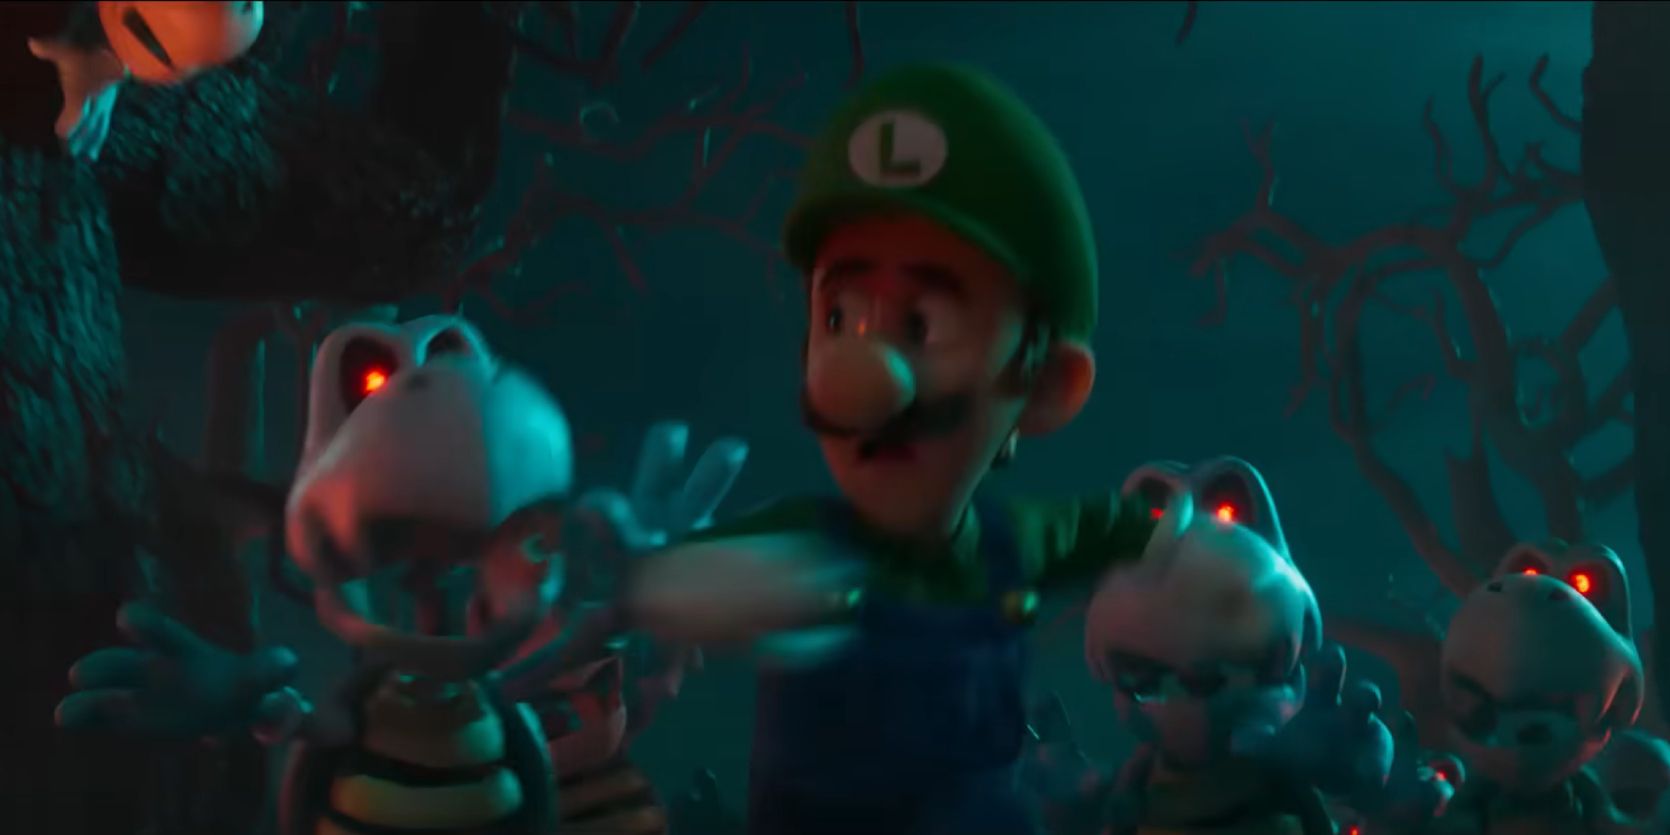 Luigi scared super mario bros movie